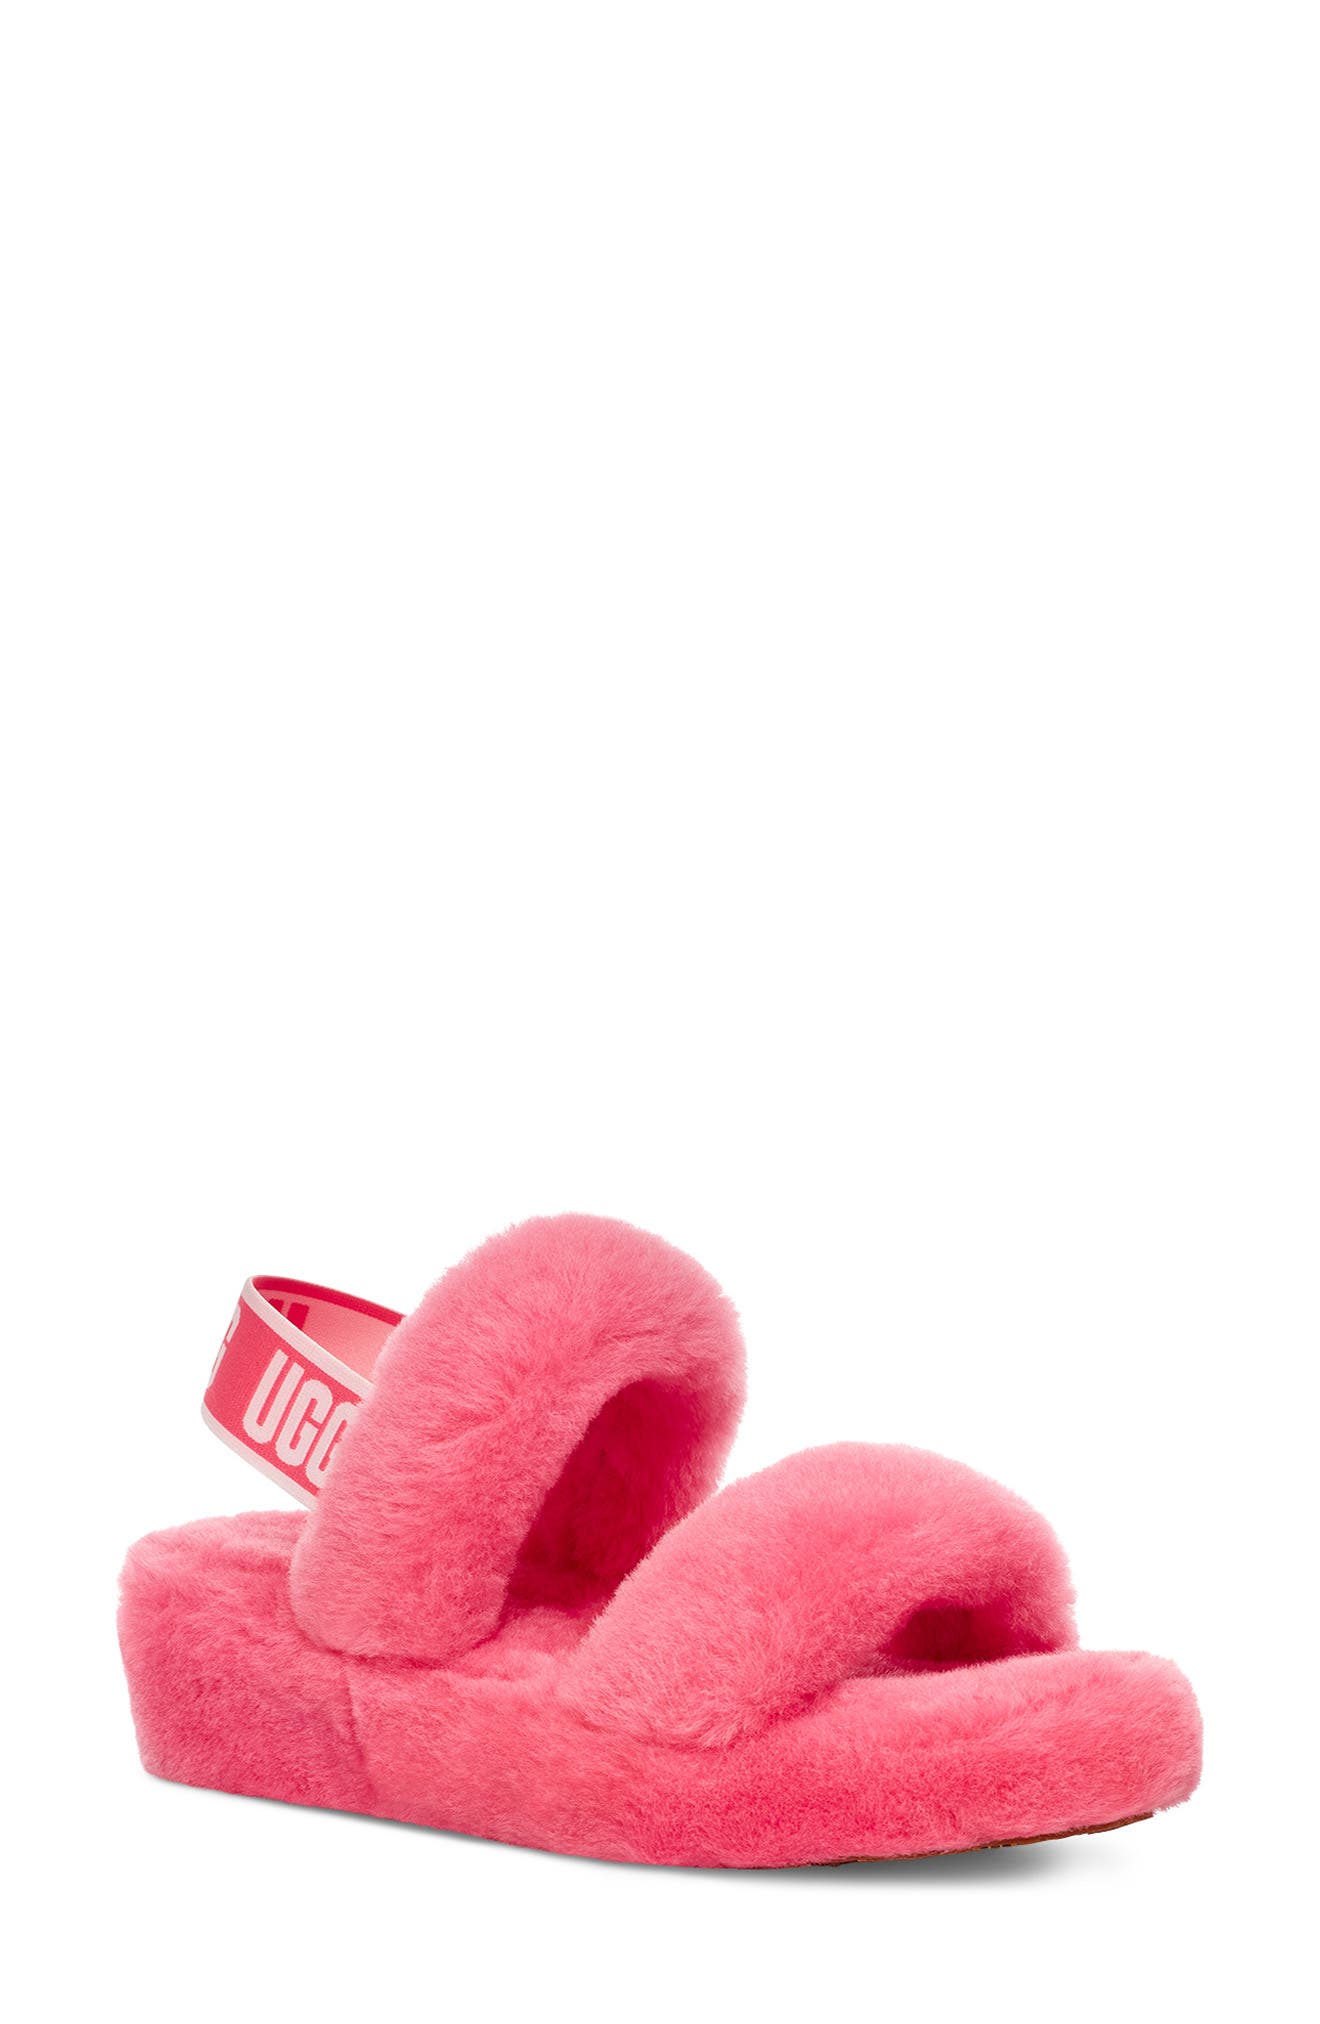 pink ugg slippers nordstrom